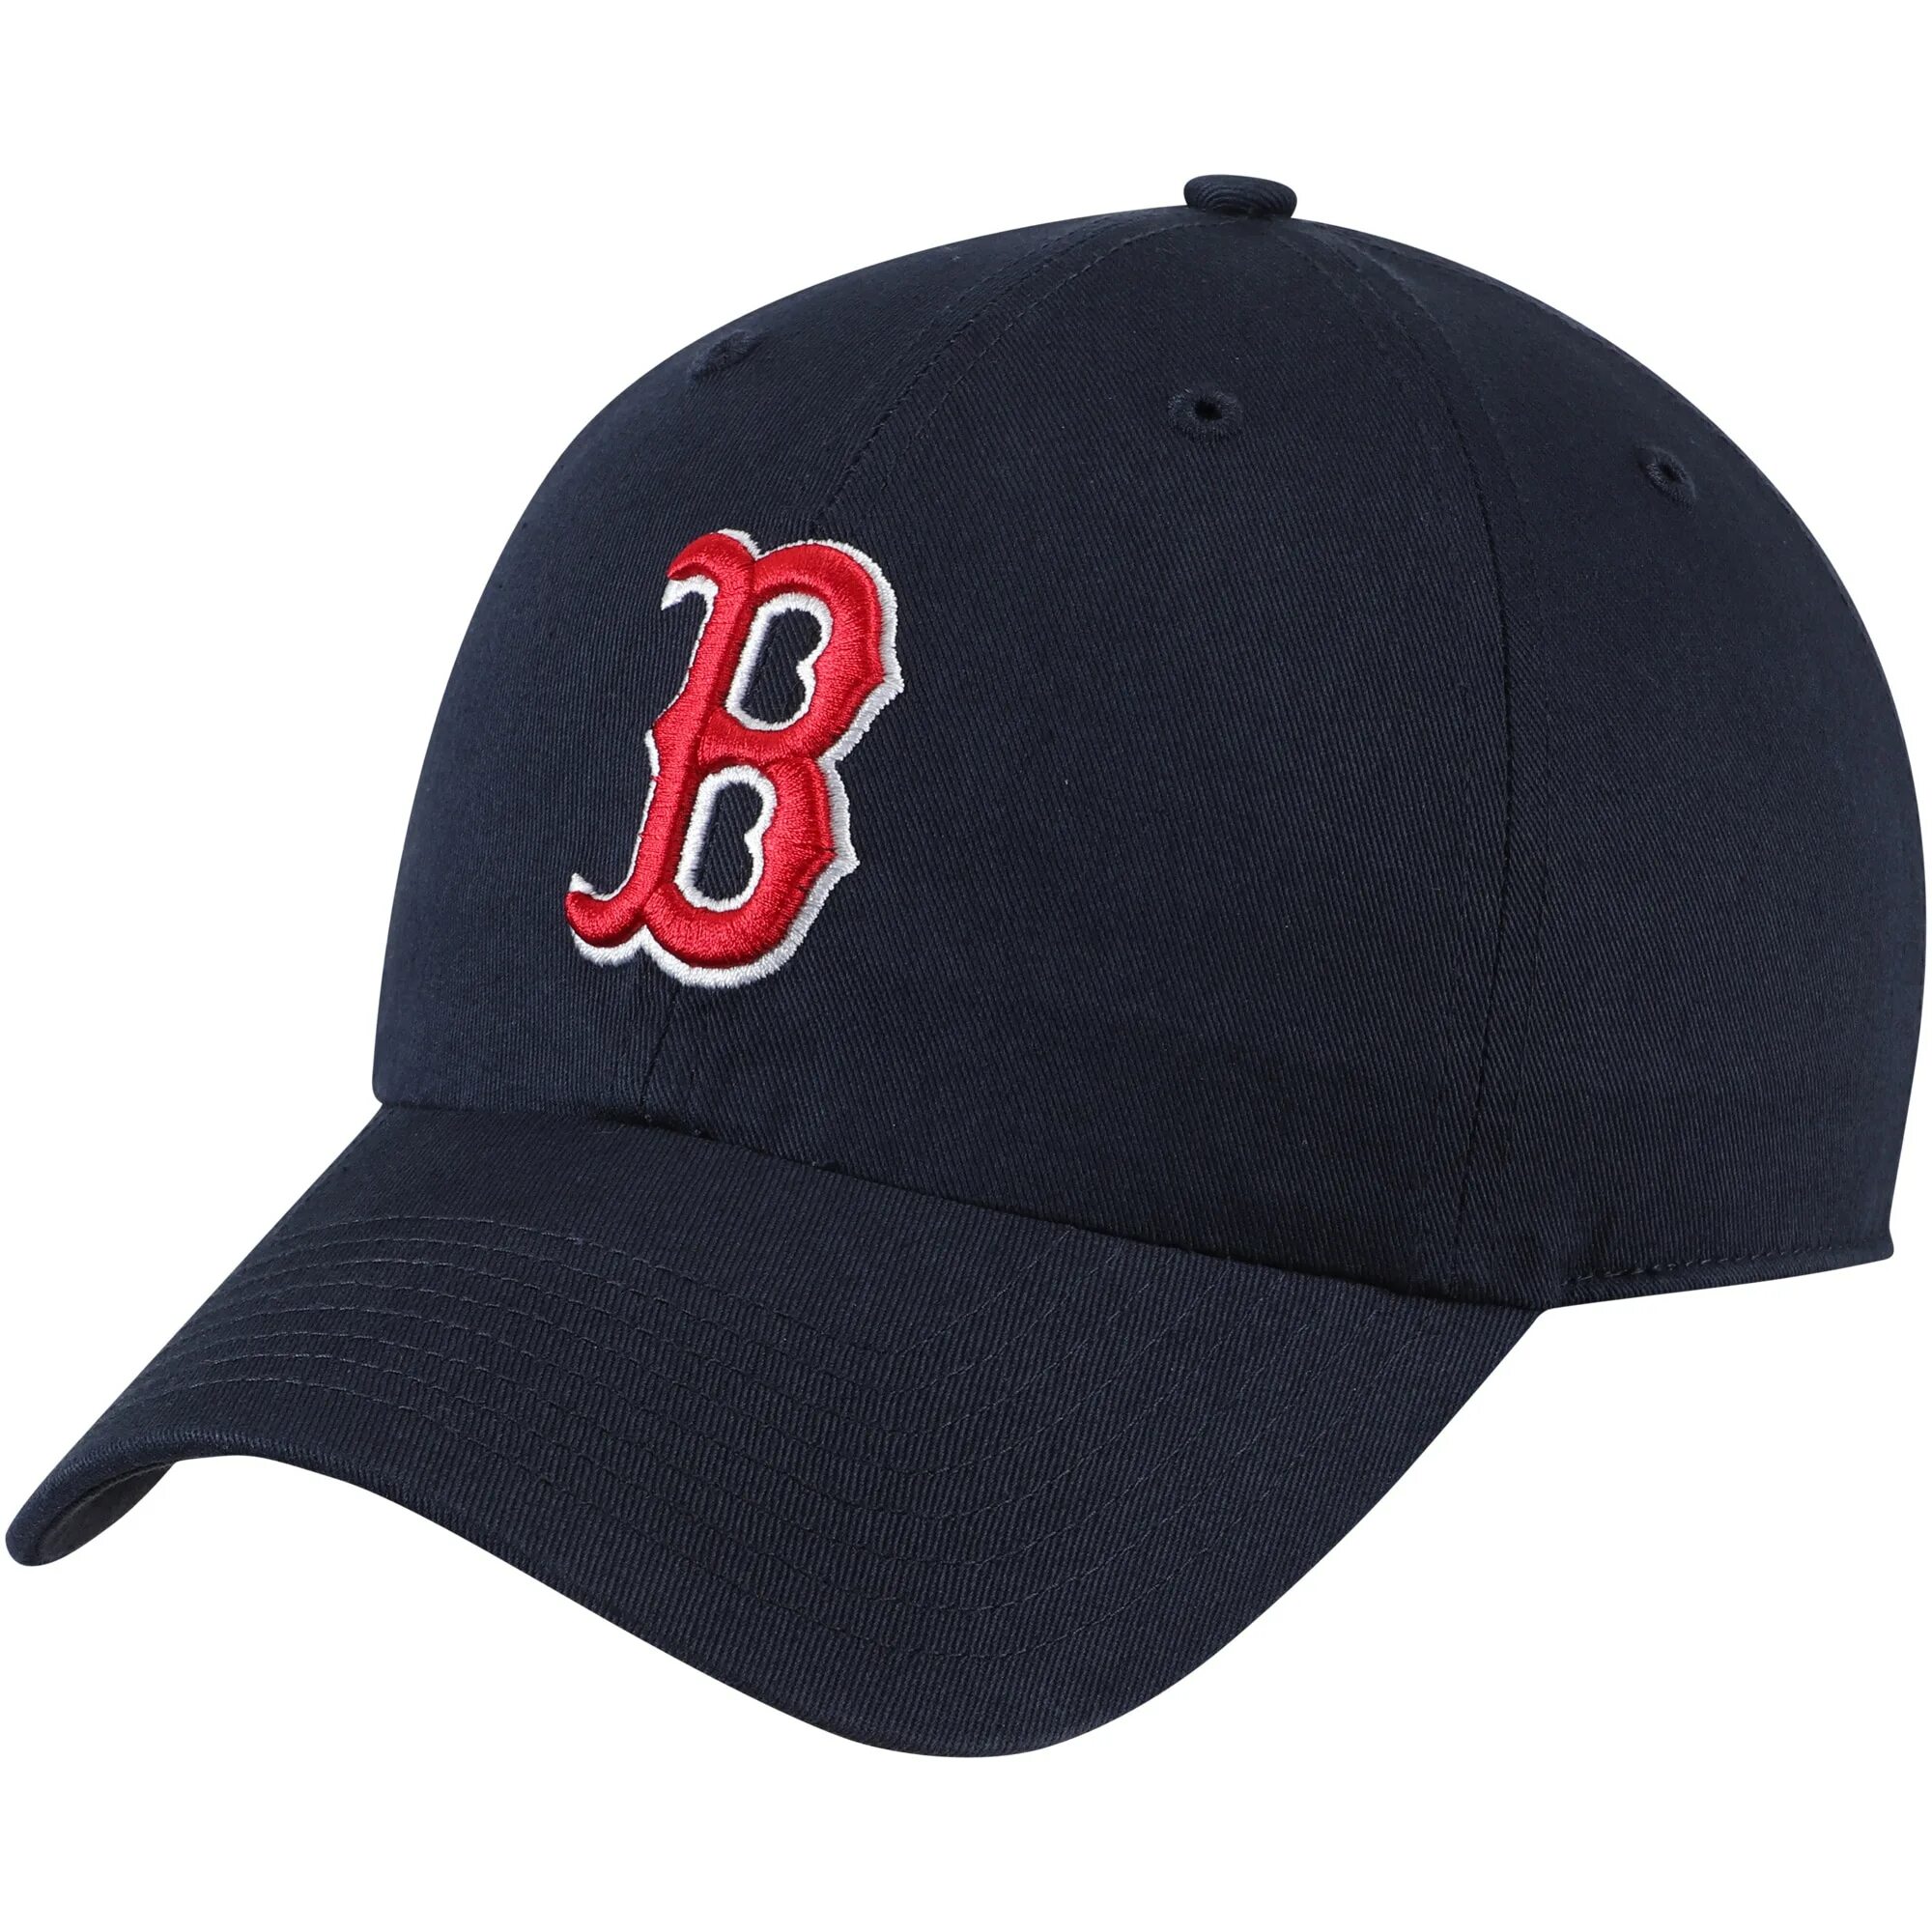 Fan favorite. Кепка Boston Red Sox. Boston Red Sox бейсболка. Fan favorite Boston бейсболки. Red Sox бейсболка.